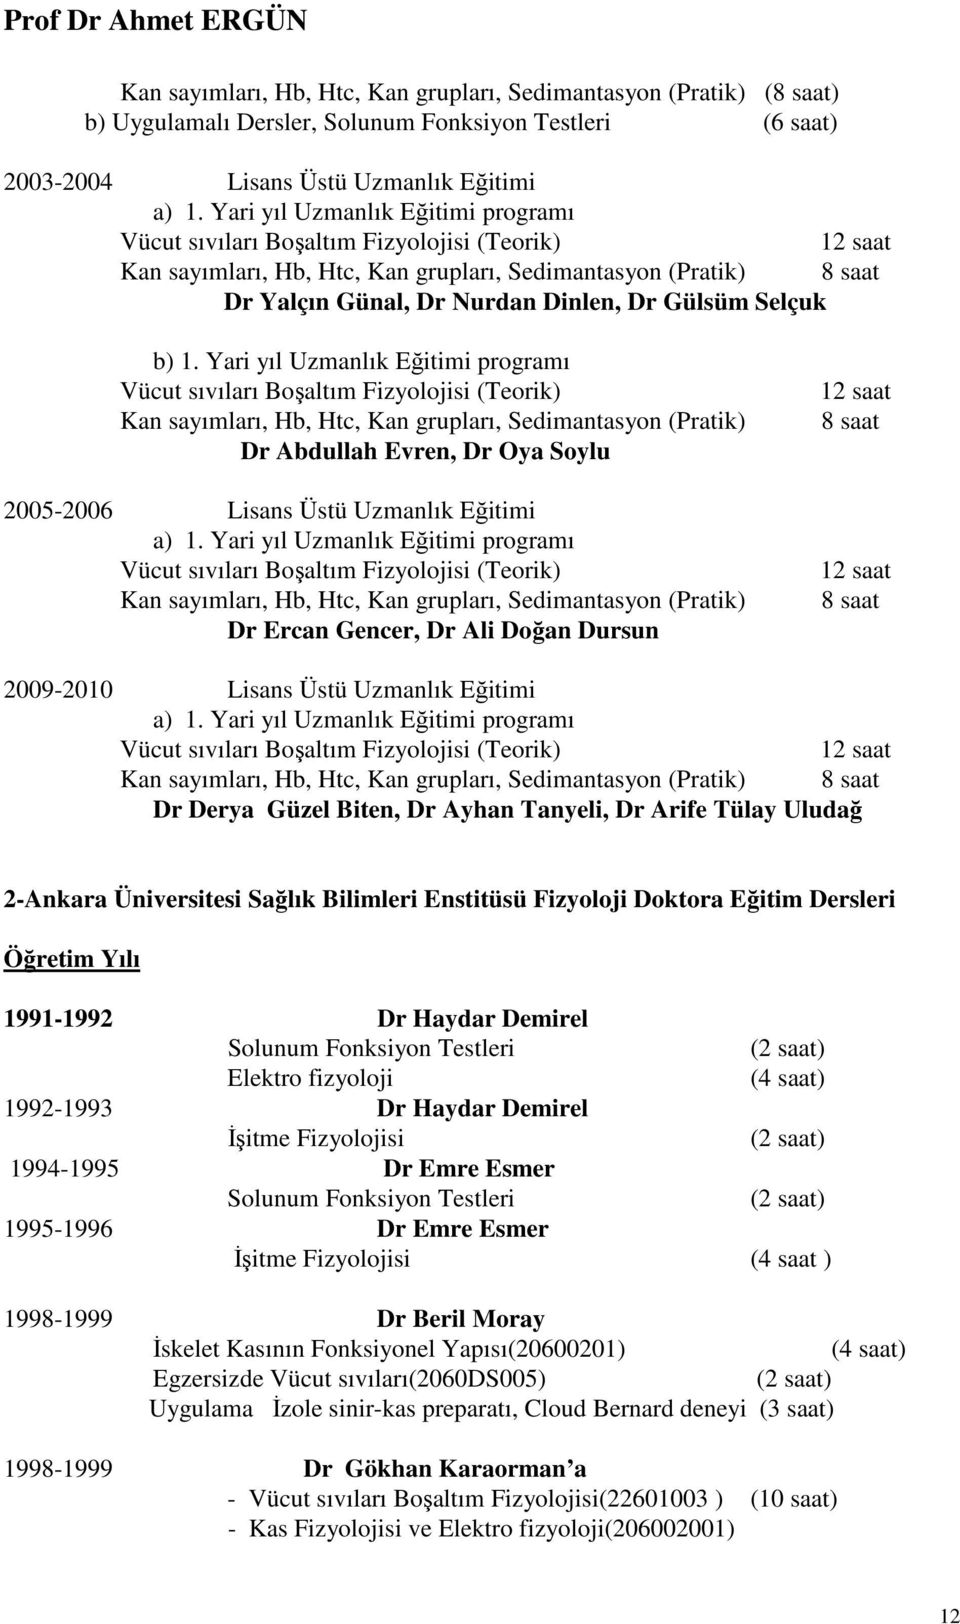 b) 1. Yari yıl Uzmanlık Eğitimi programı Vücut sıvıları Boşaltım Fizyolojisi (Teorik) Kan sayımları, Hb, Htc, Kan grupları, Sedimantasyon (Pratik) Dr Abdullah Evren, Dr Oya Soylu 2005-2006 Lisans